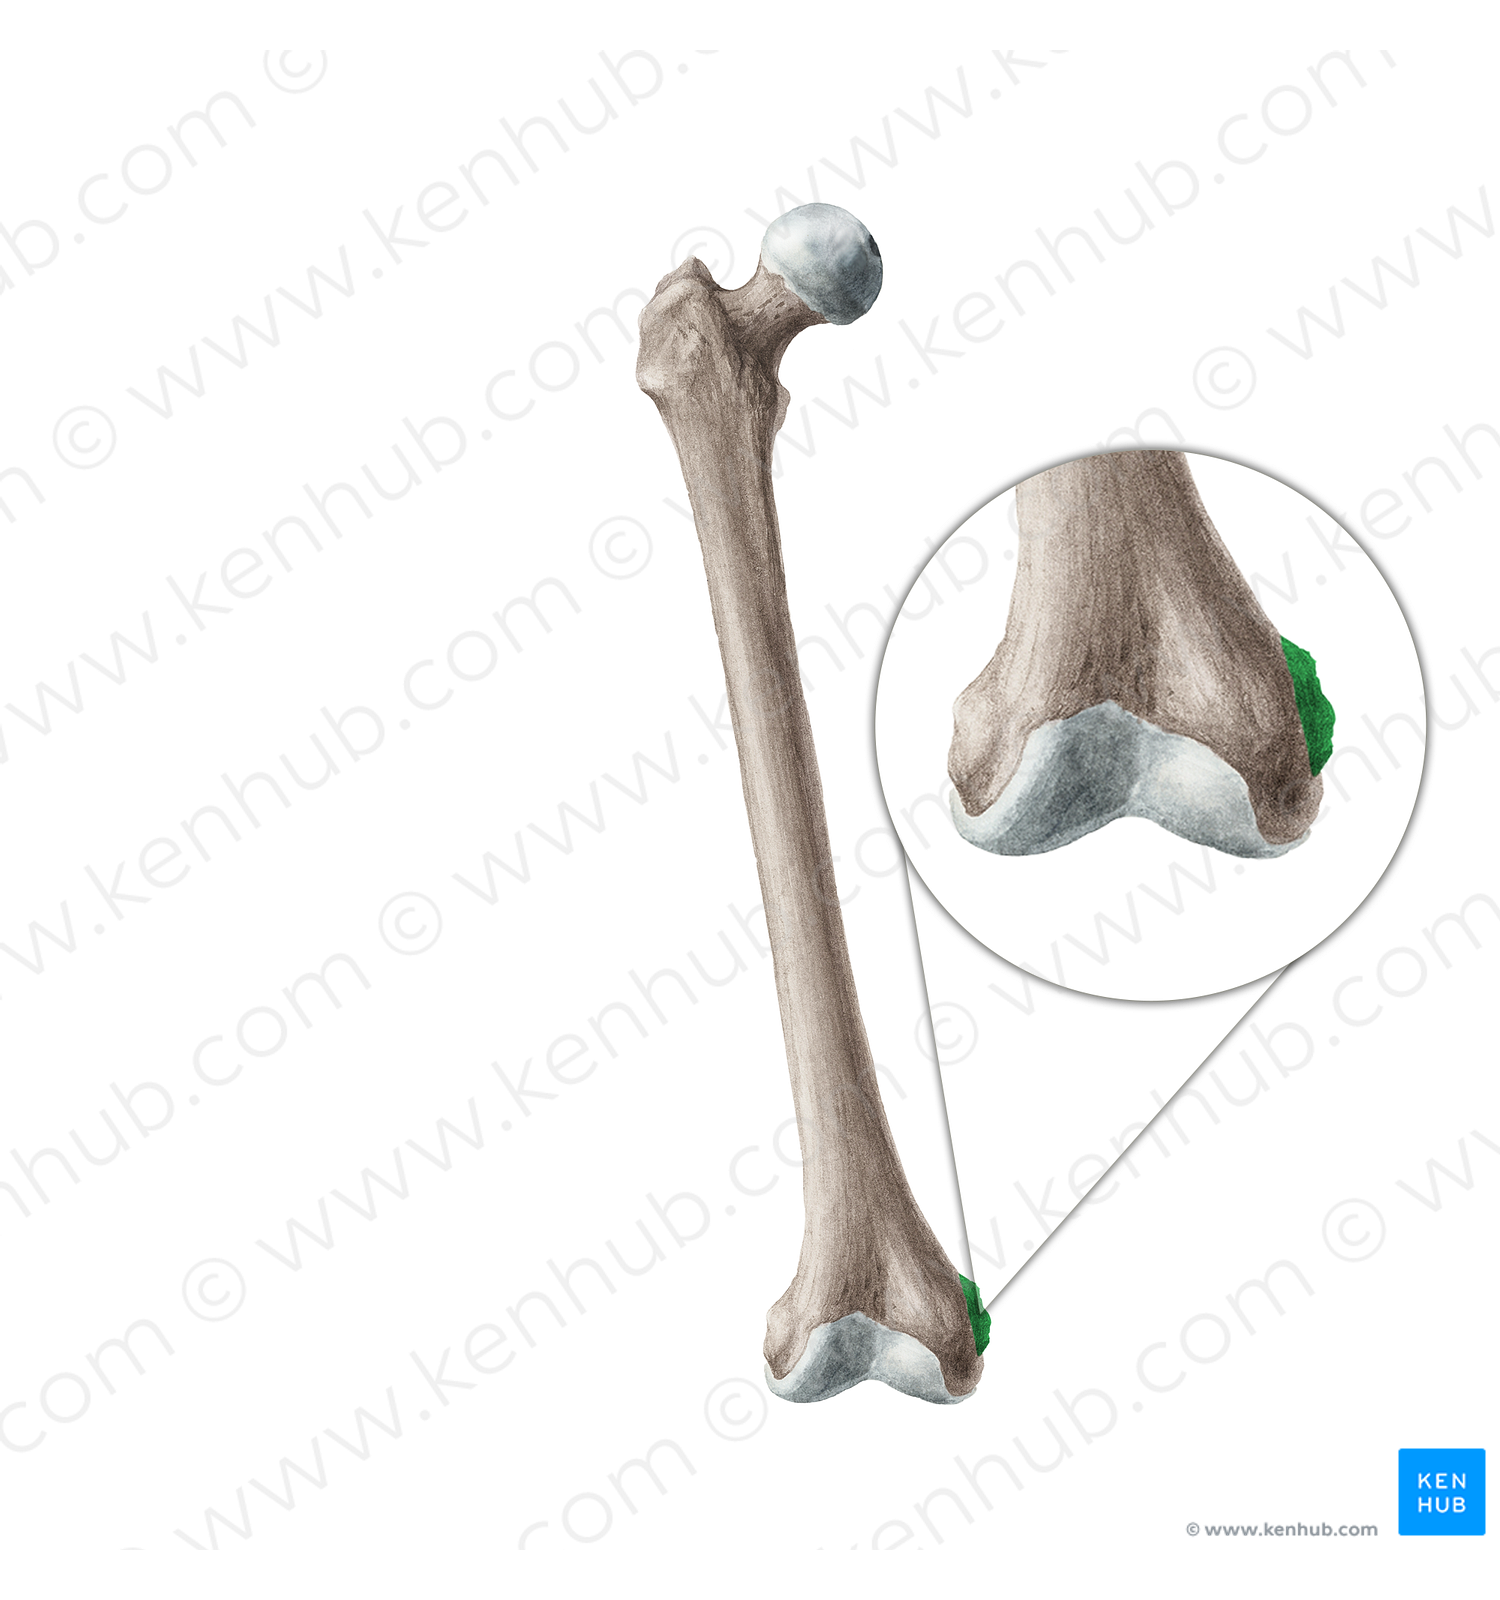 Medial epicondyle of femur (#3399)